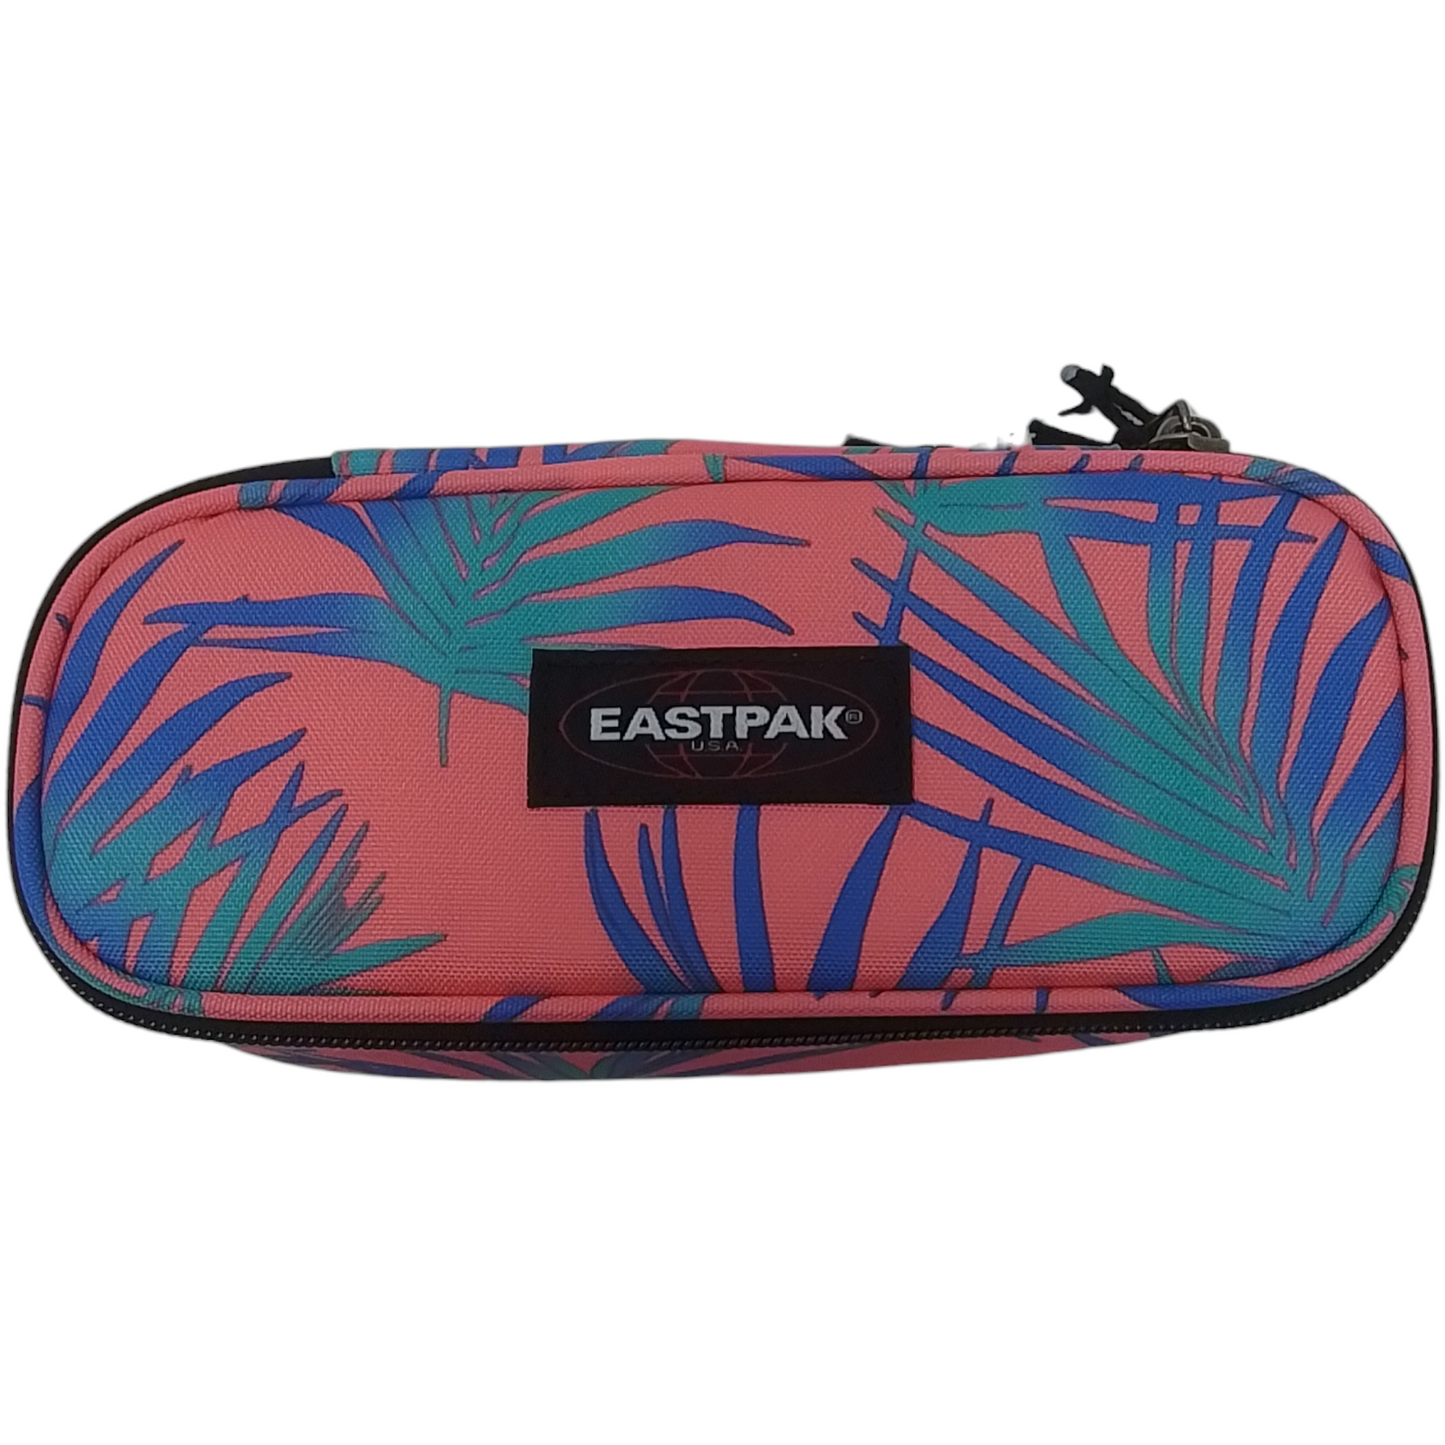 EASTPAK - Astucci